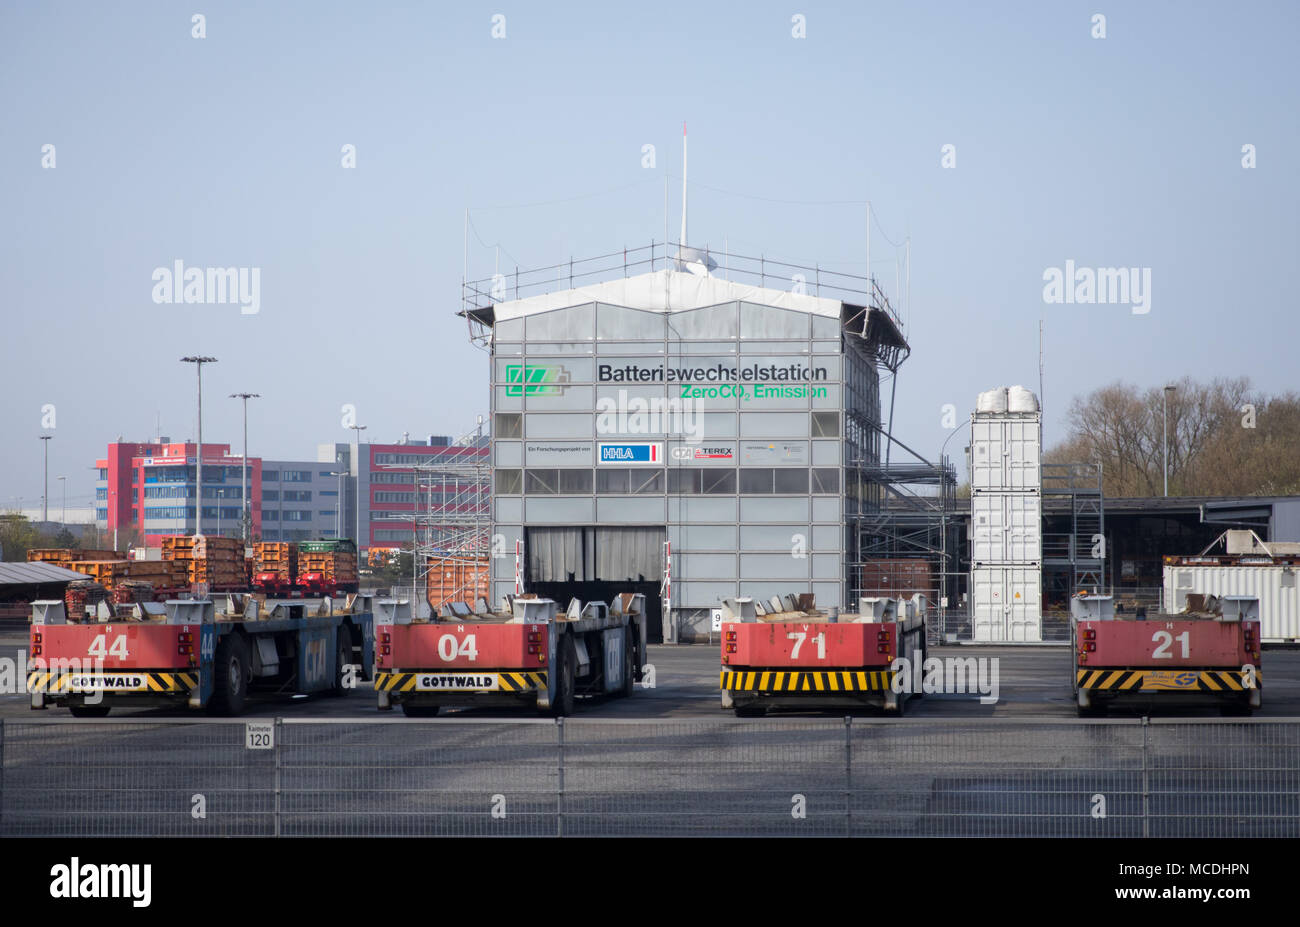 16 avril 2018, l'Allemagne, Hambourg : les transporteurs de conteneurs  Automatique (AGV) à l'extérieur d'un bâtiment avec une station de  changement de batterie au Container Terminal Altenwerder (LTC). Le lundi,  l'environnement de